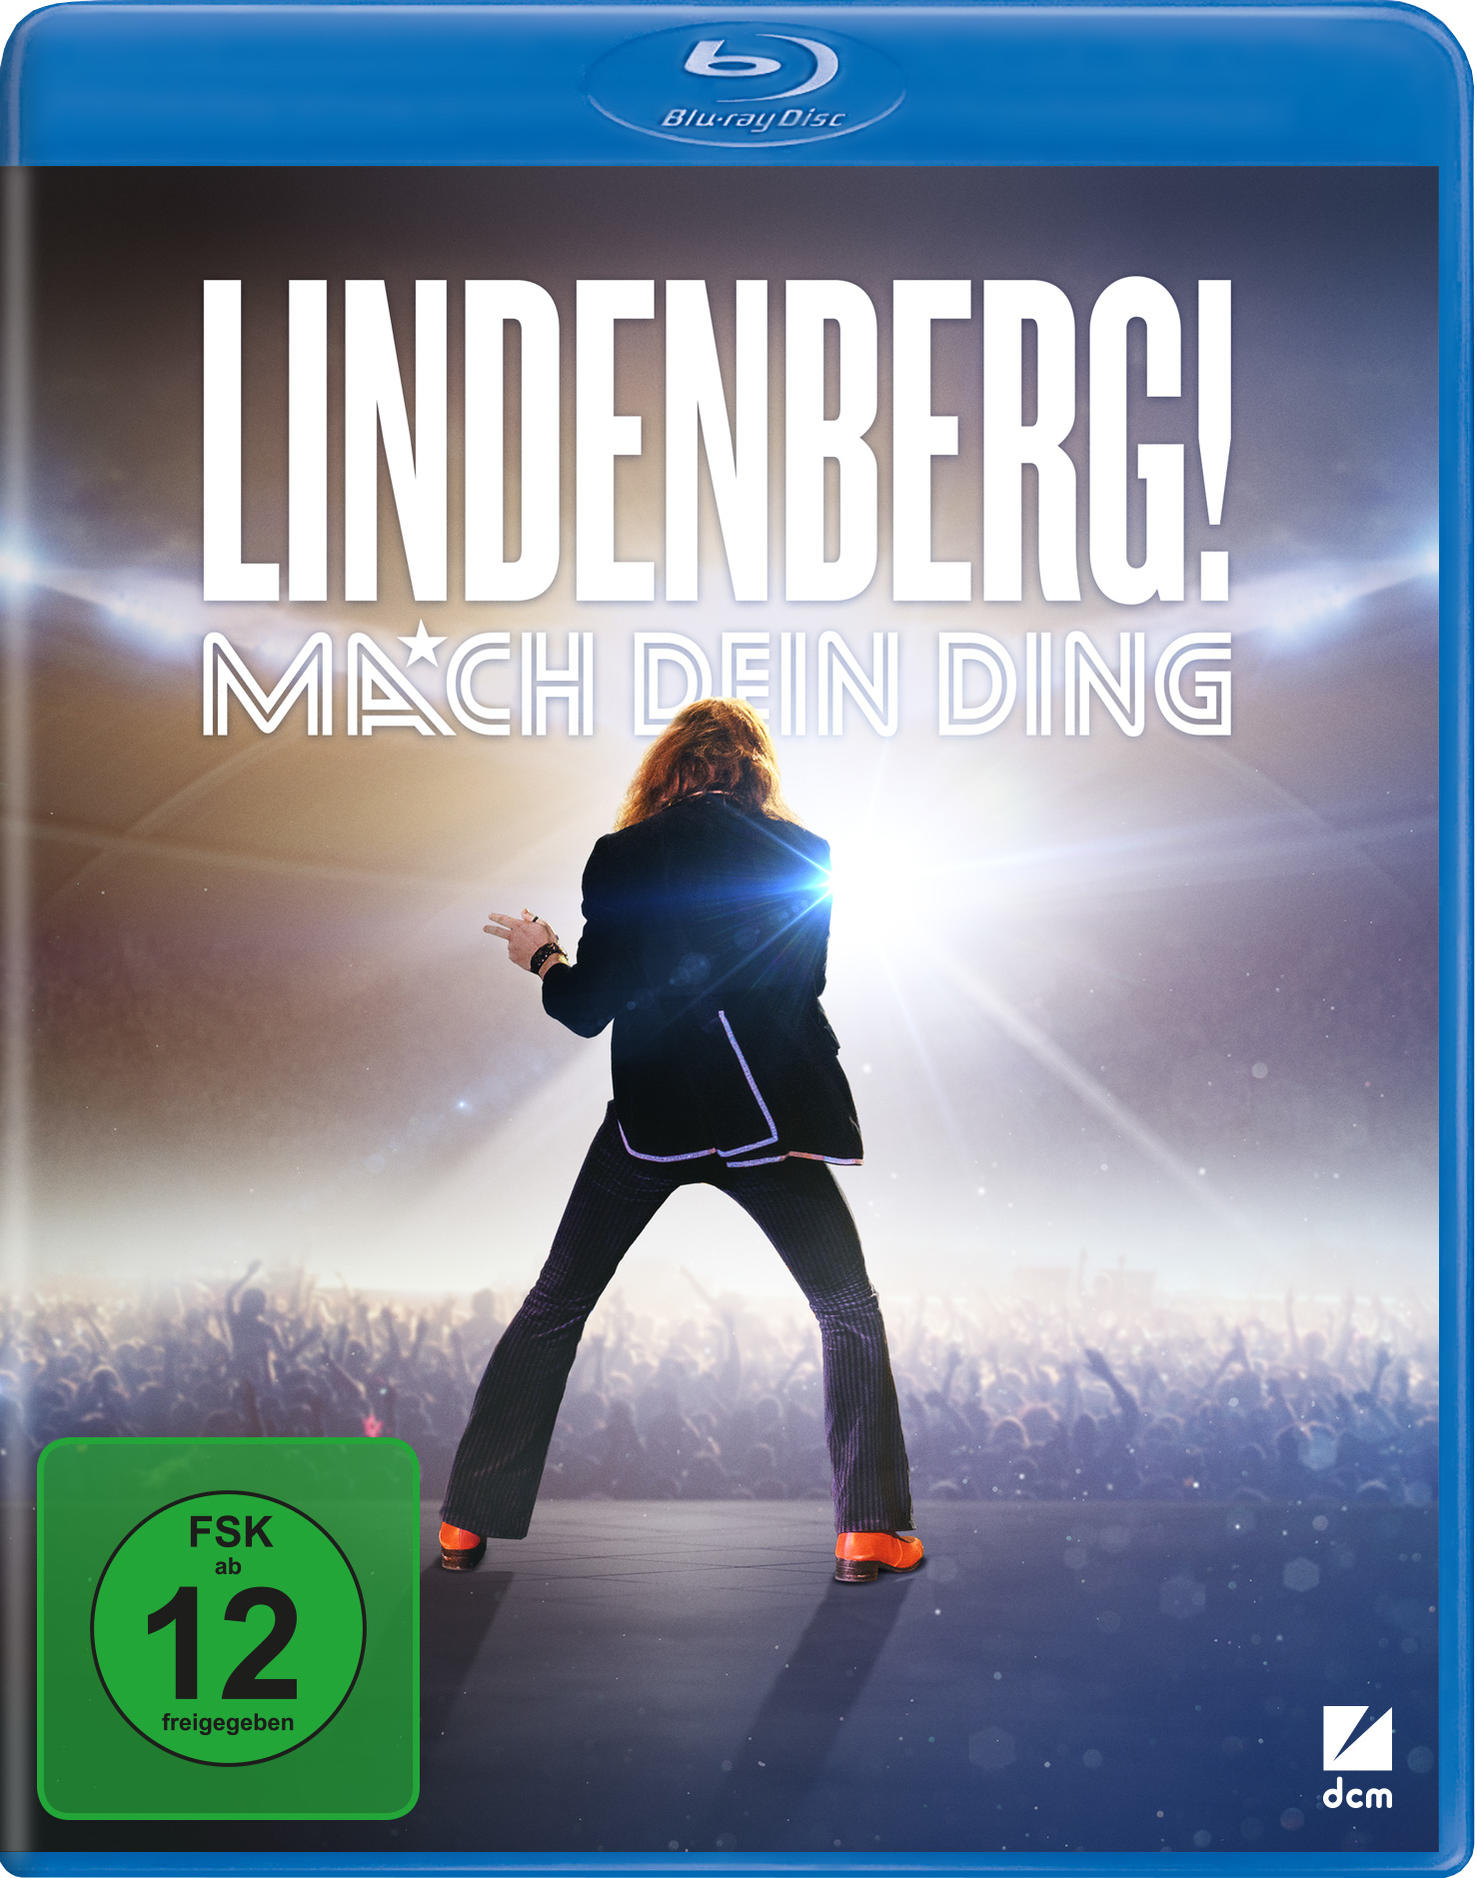 Lindenberg! dein Blu-ray Mach Ding